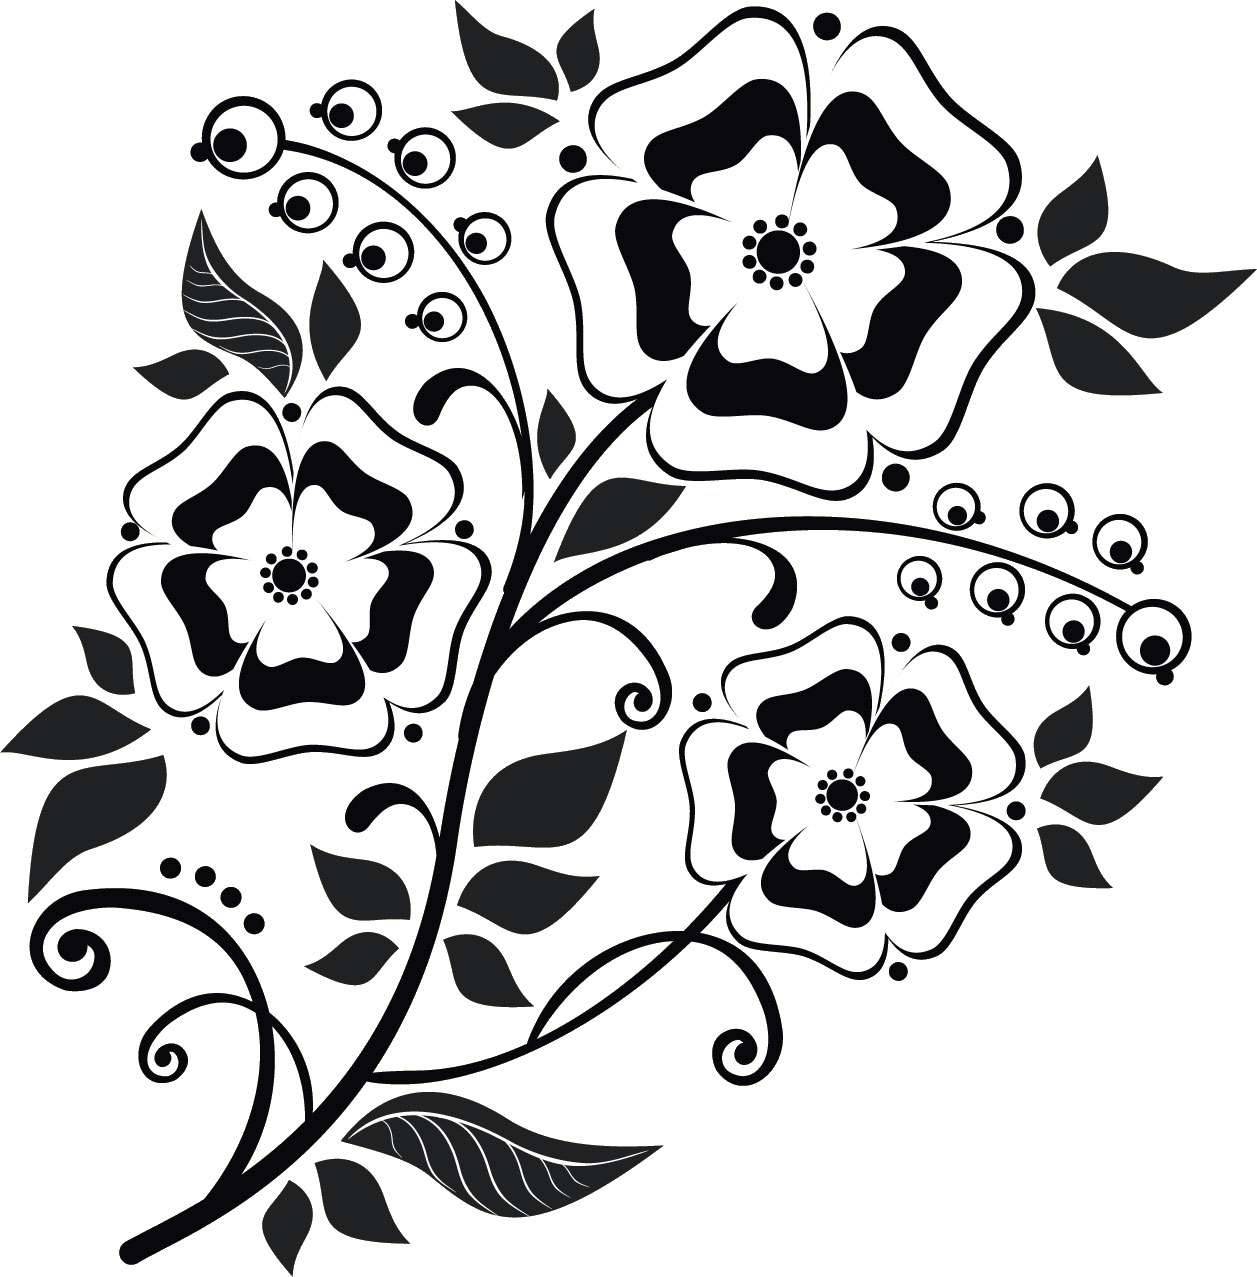 花のイラスト フリー素材 白黒の花束no 002 白黒 パンジー風